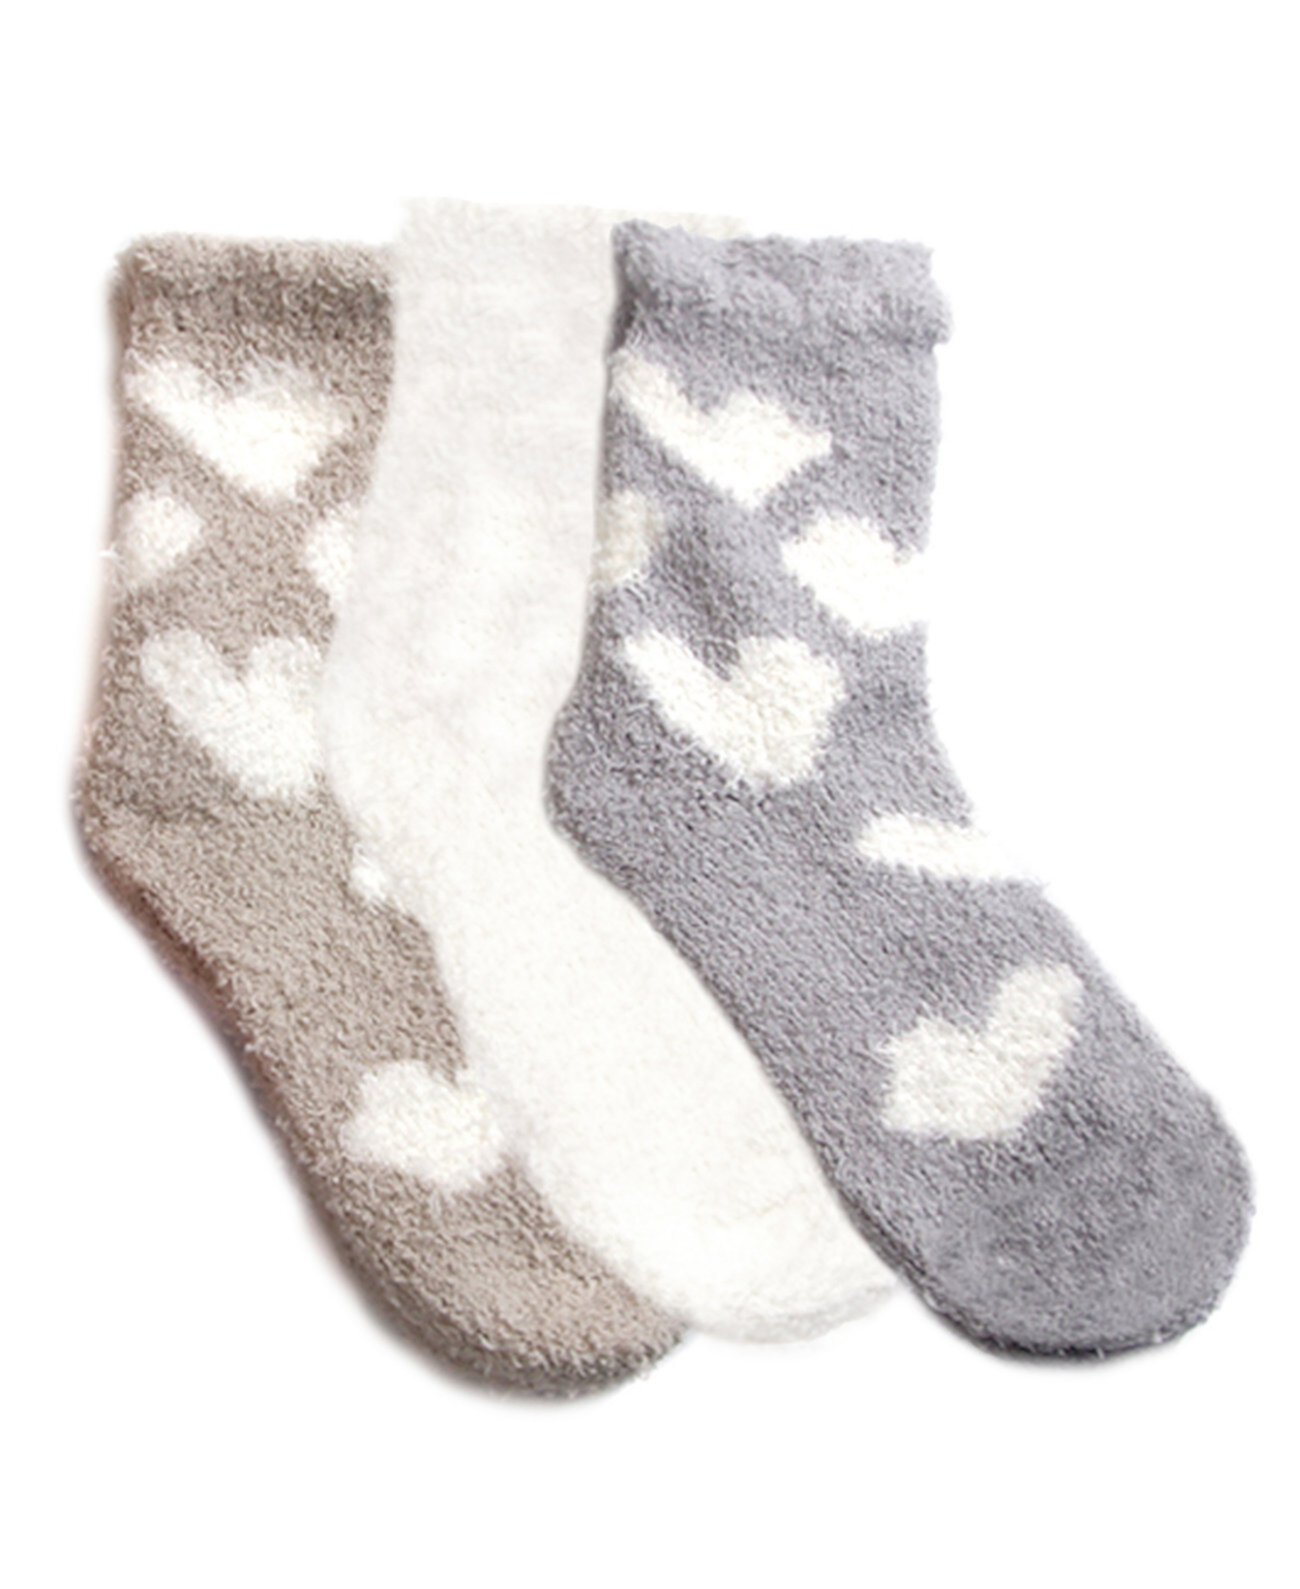 Women's Heart Cozy Socks Set, Pack of 3 Stems